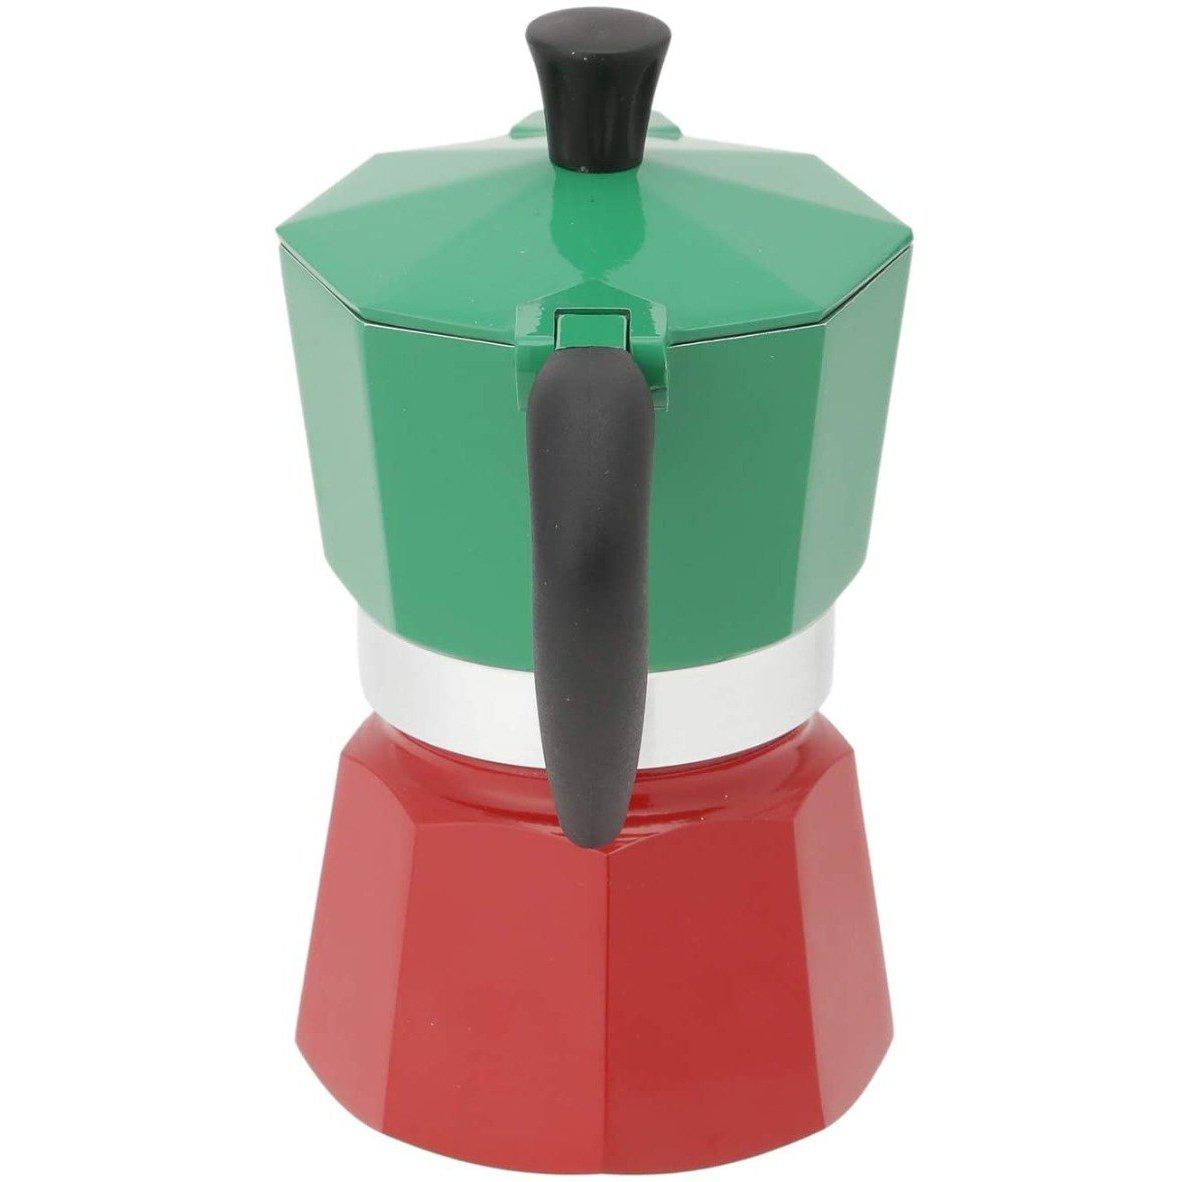 Bialetti Moka 1-Cup Stovetop Espresso Maker